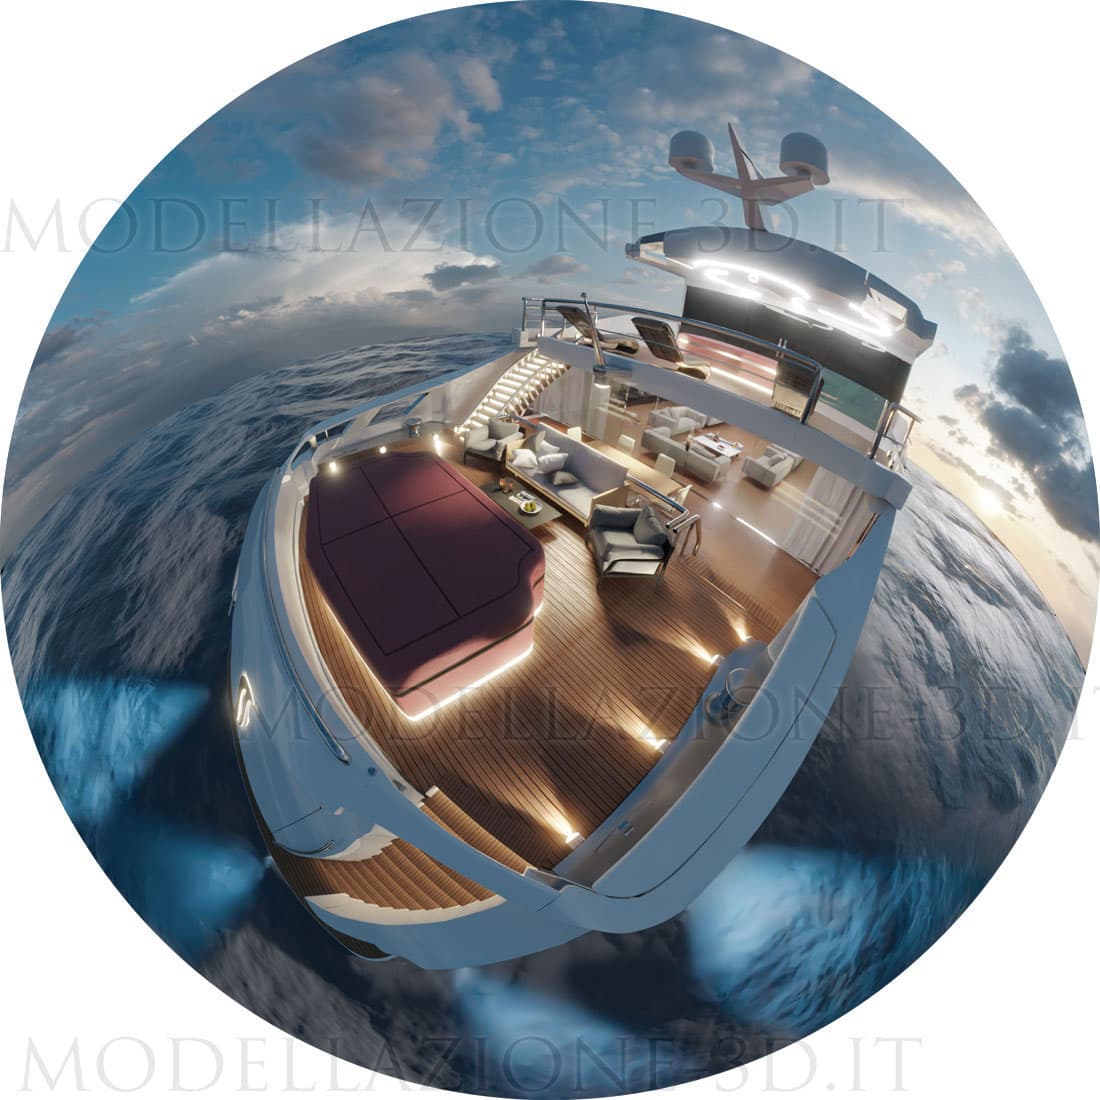 Modellazione e render Yacht lusso